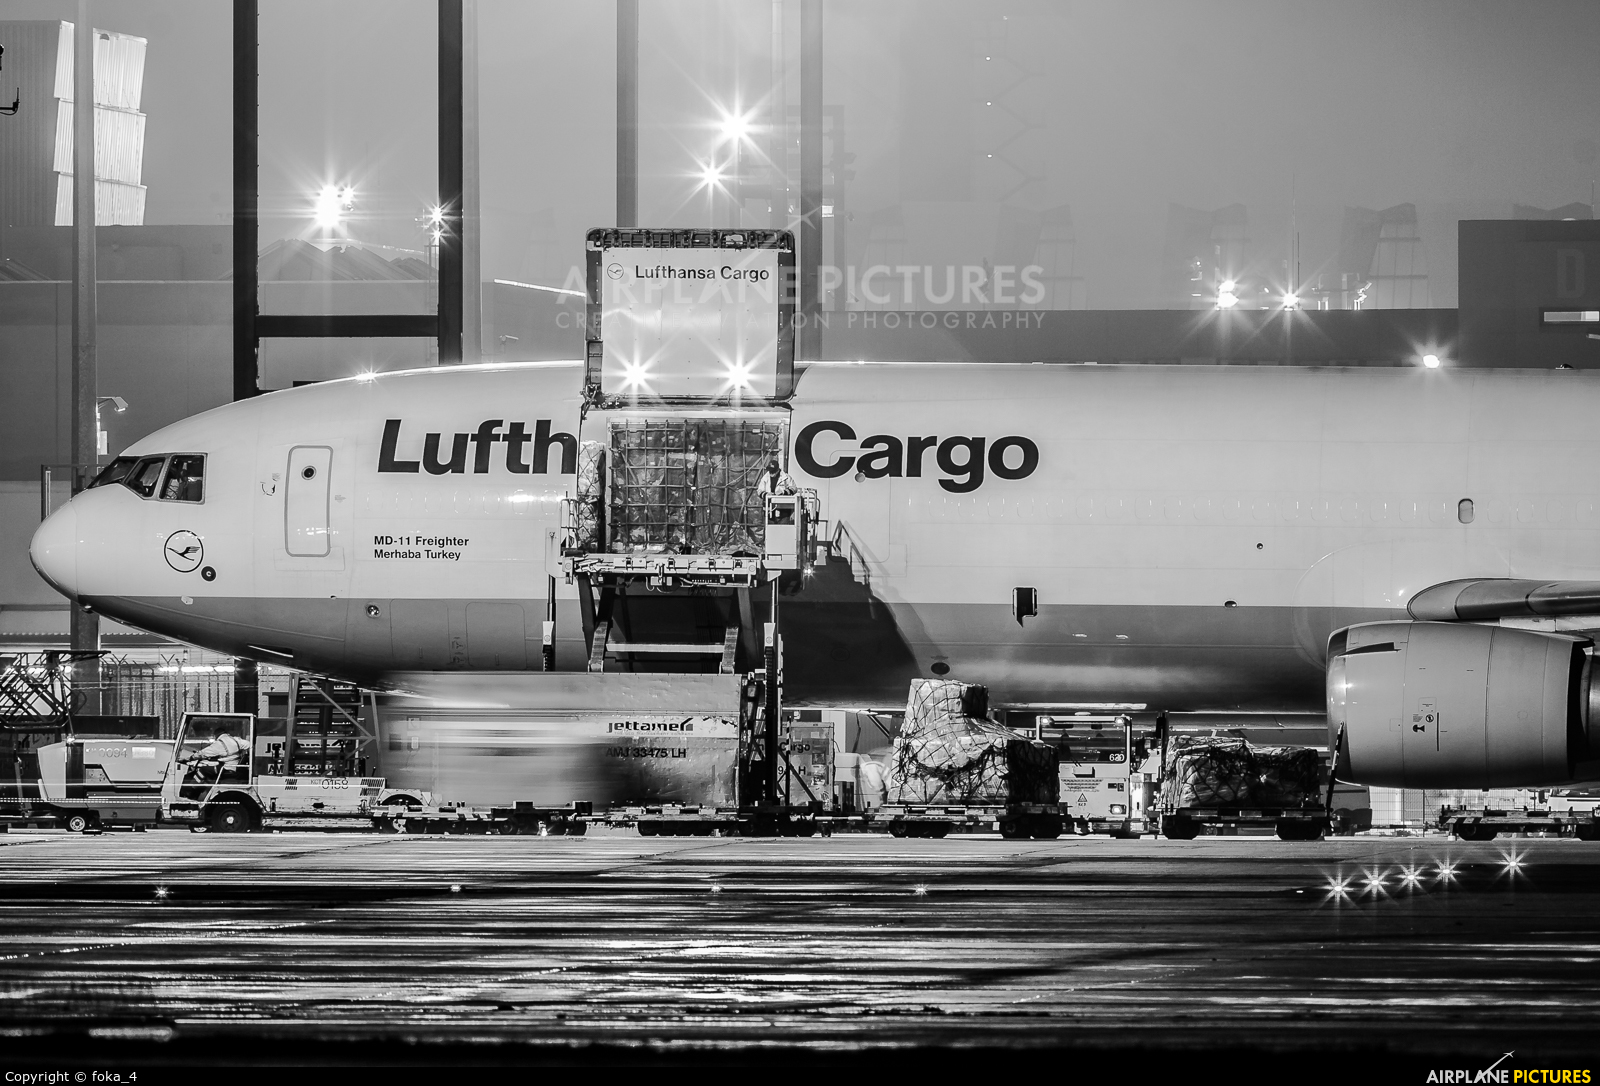 Lufthansa Cargo D-ALCE aircraft at Frankfurt